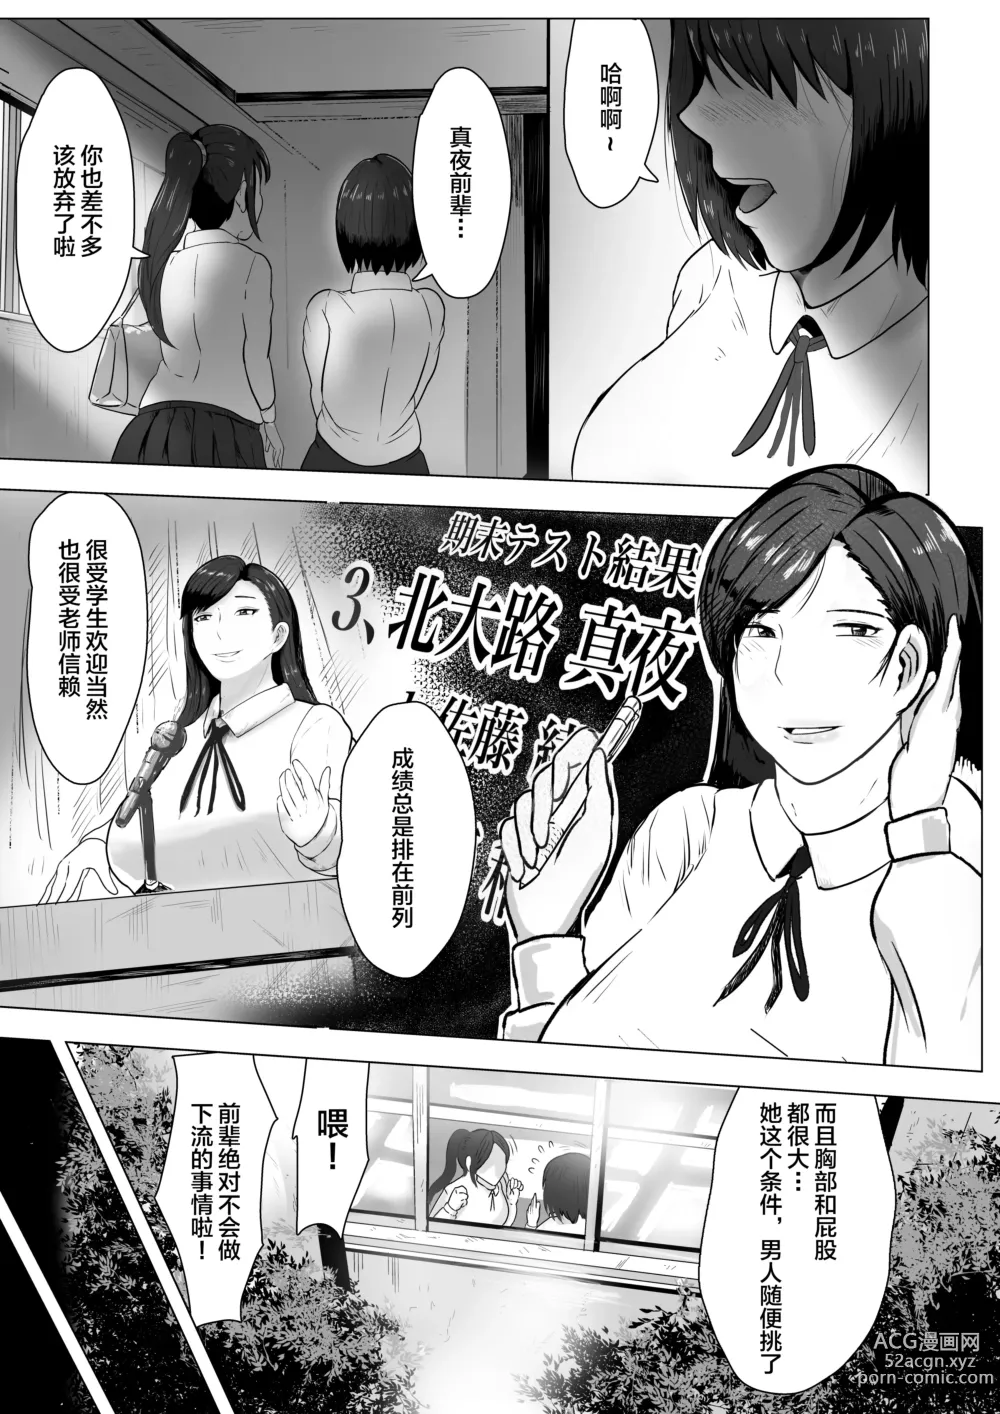 Page 6 of doujinshi Kurokami JK no Hentai